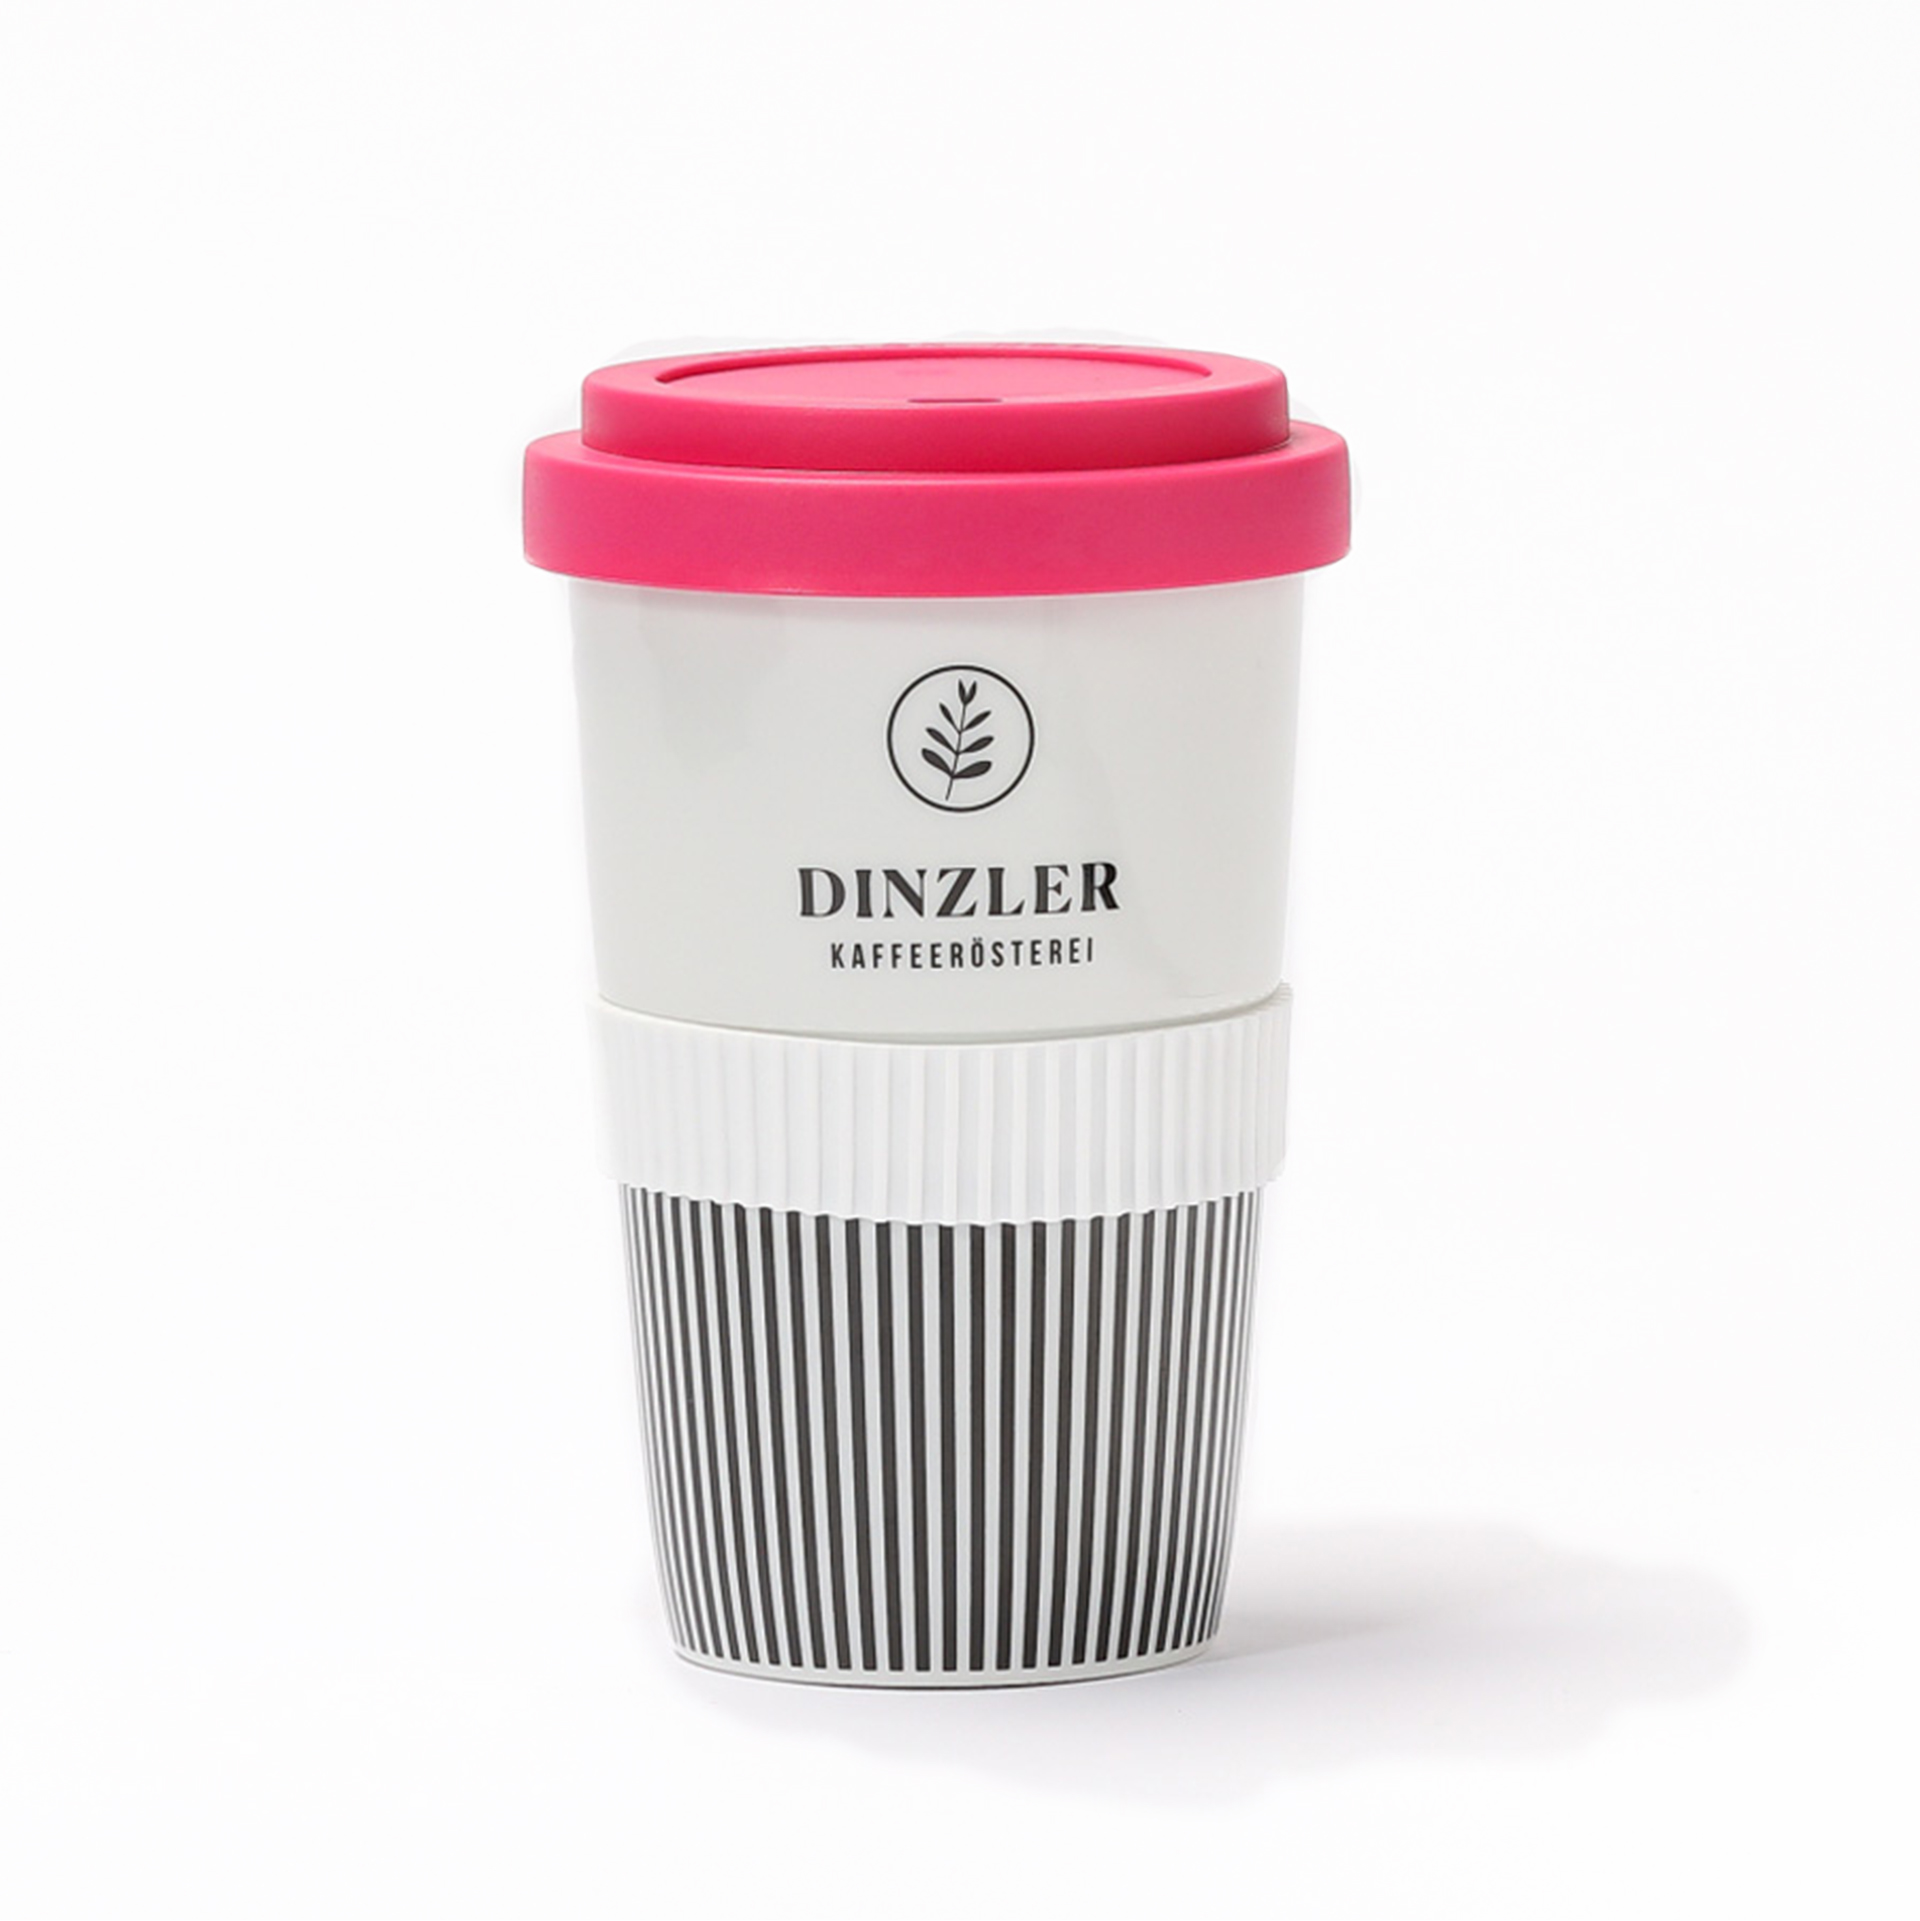 DINZLER To Go Becher Porzellan| DINZLER Kaffeerösterei